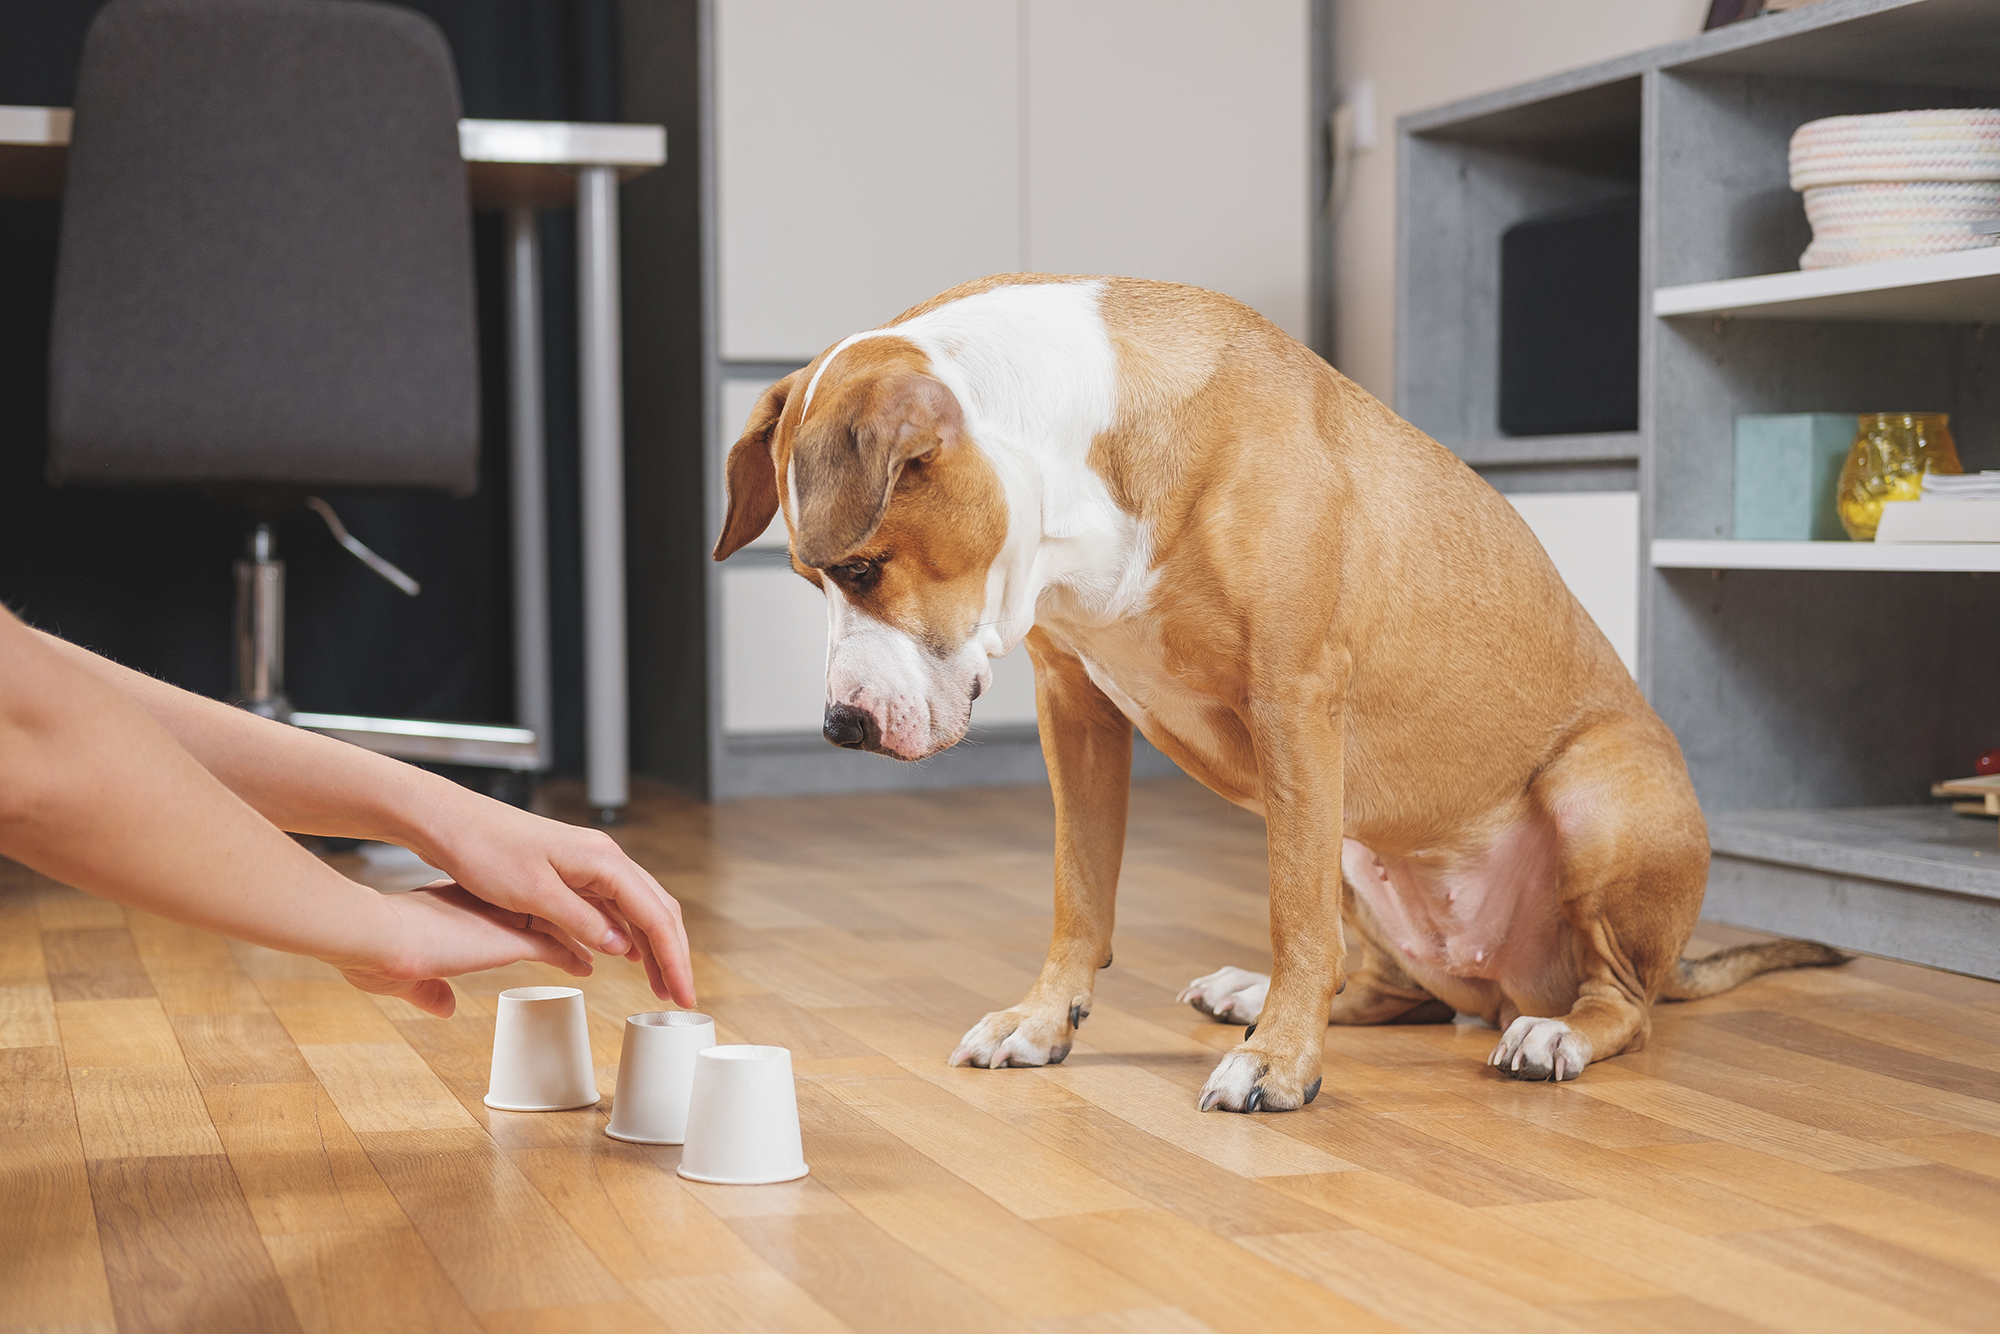 Тренировки «ноузворк» — обучение собак находить и обозначать определенный запах. Такие занятия дают ментальную нагрузку собаке и повышают ее уверенность в себе. Источник: Aleksey Boyko / Shutterstock